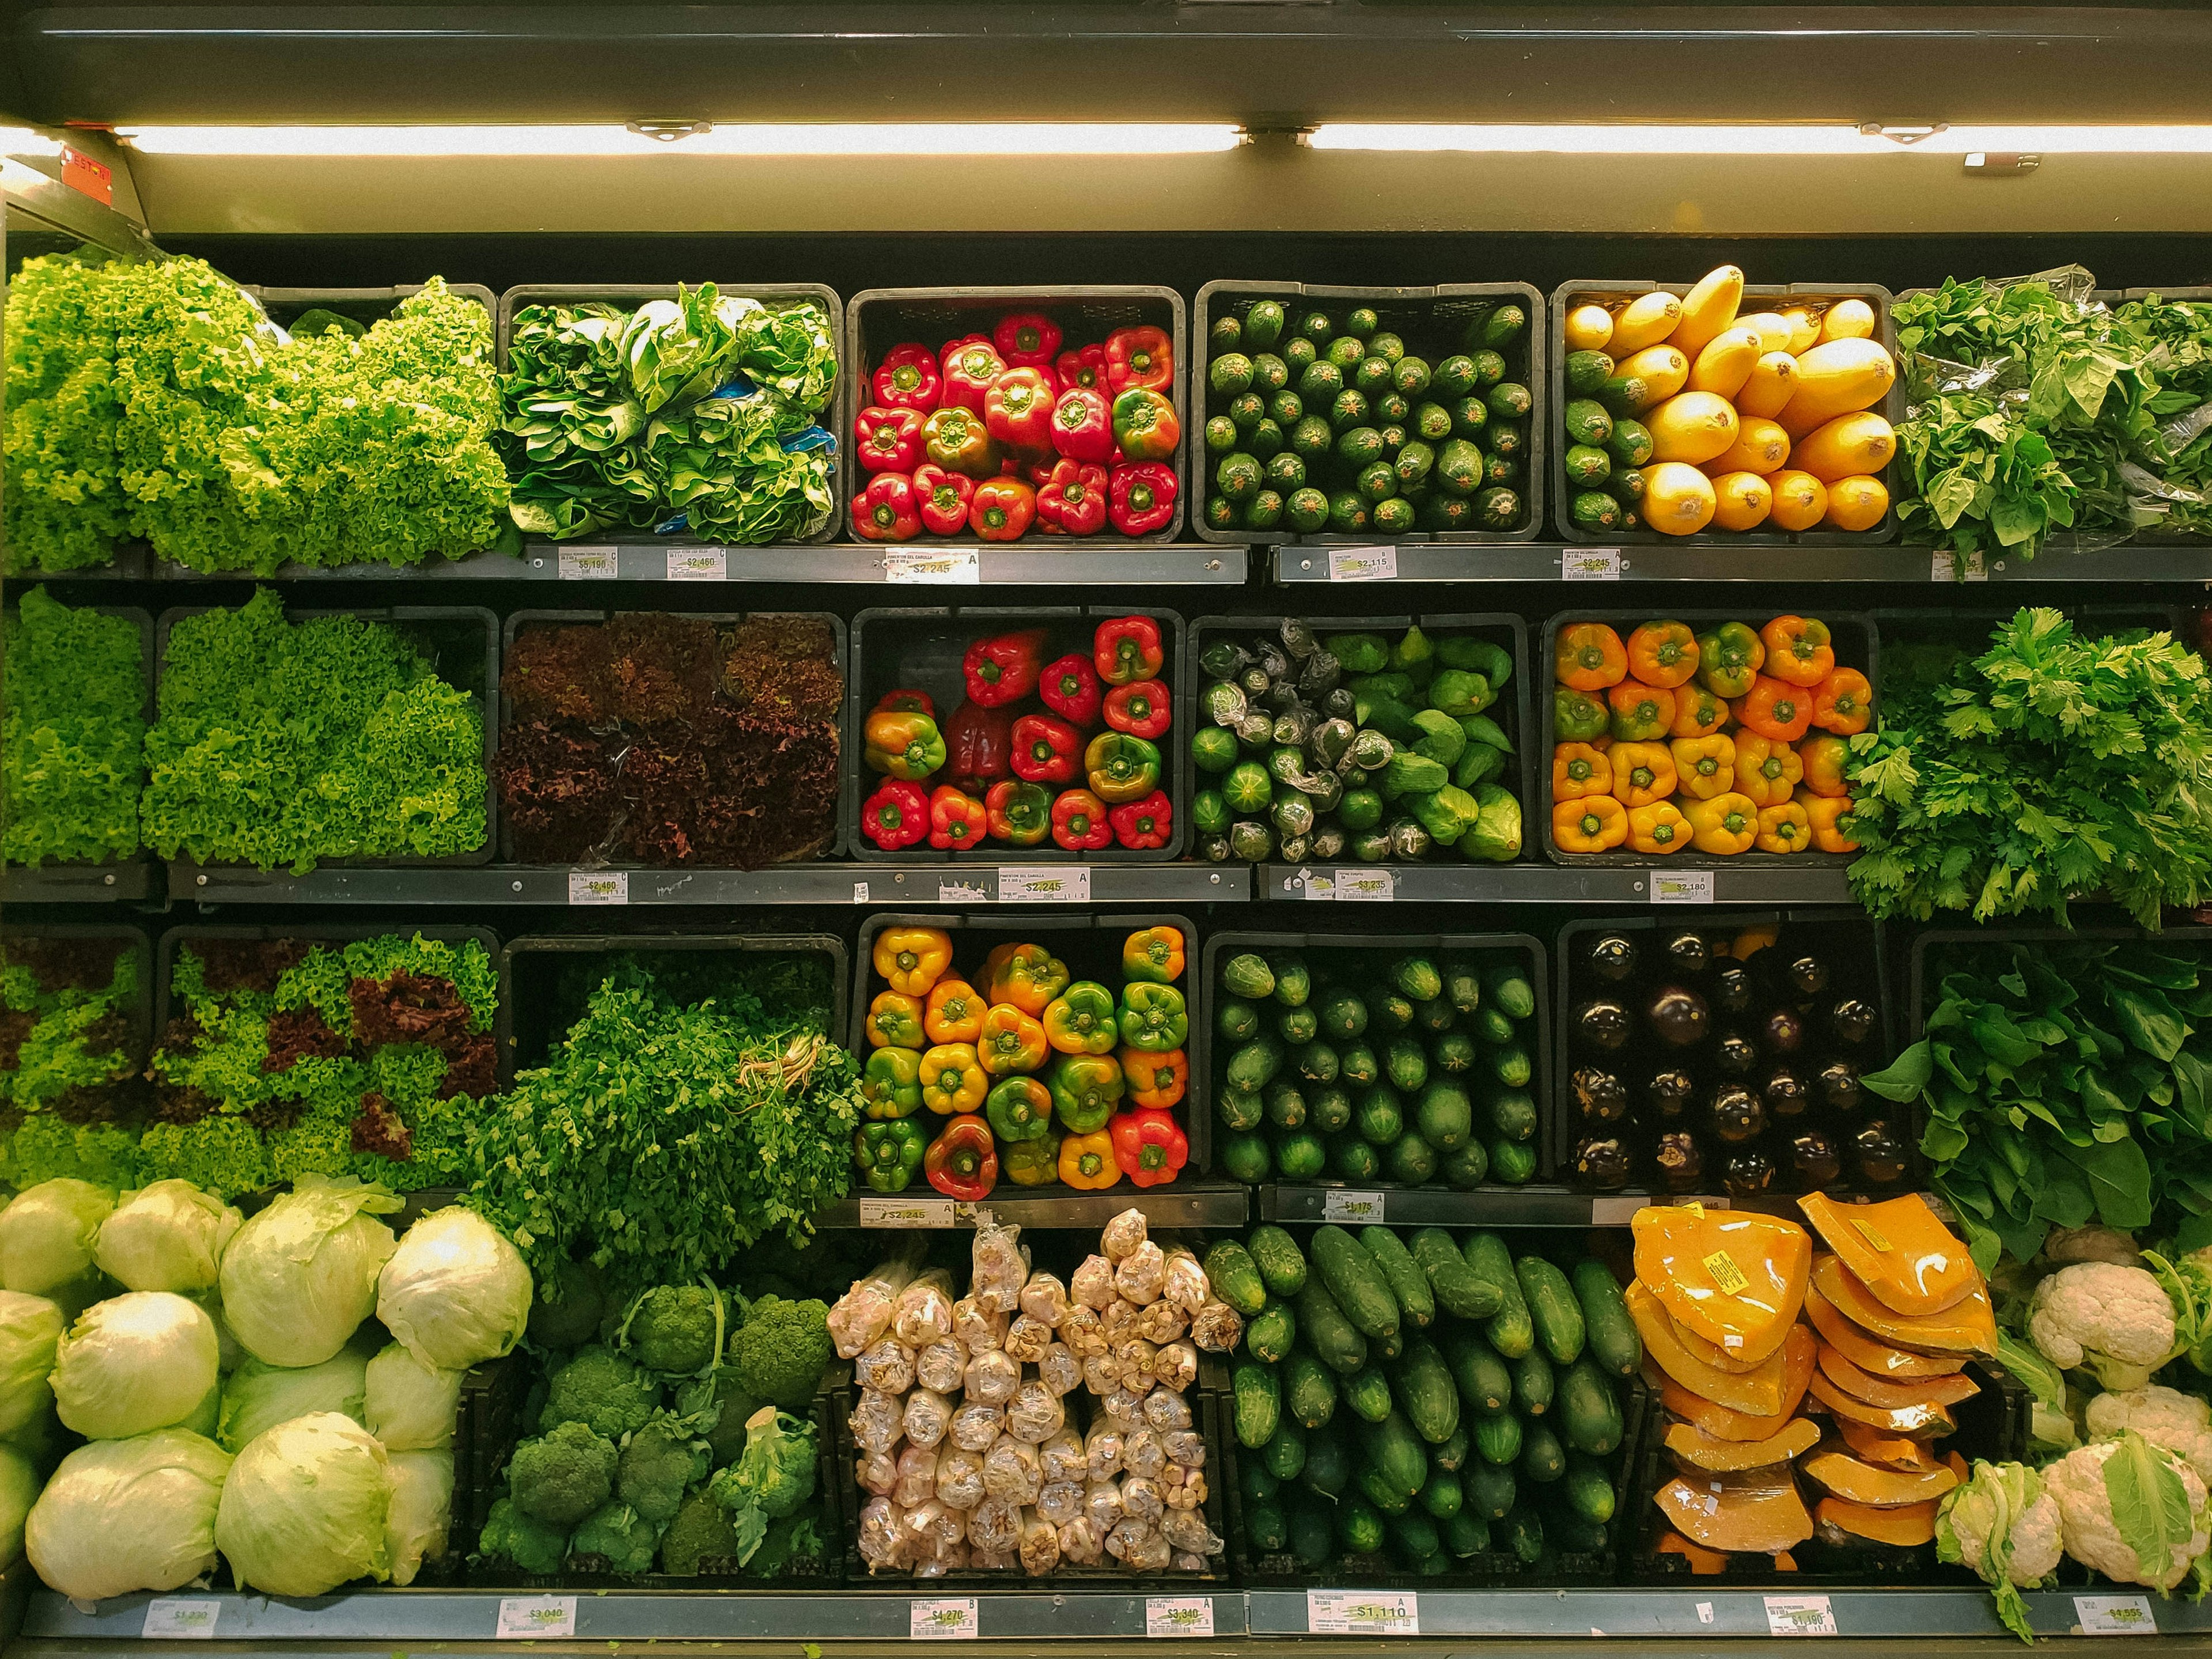 grocery store shelves full of vegetables